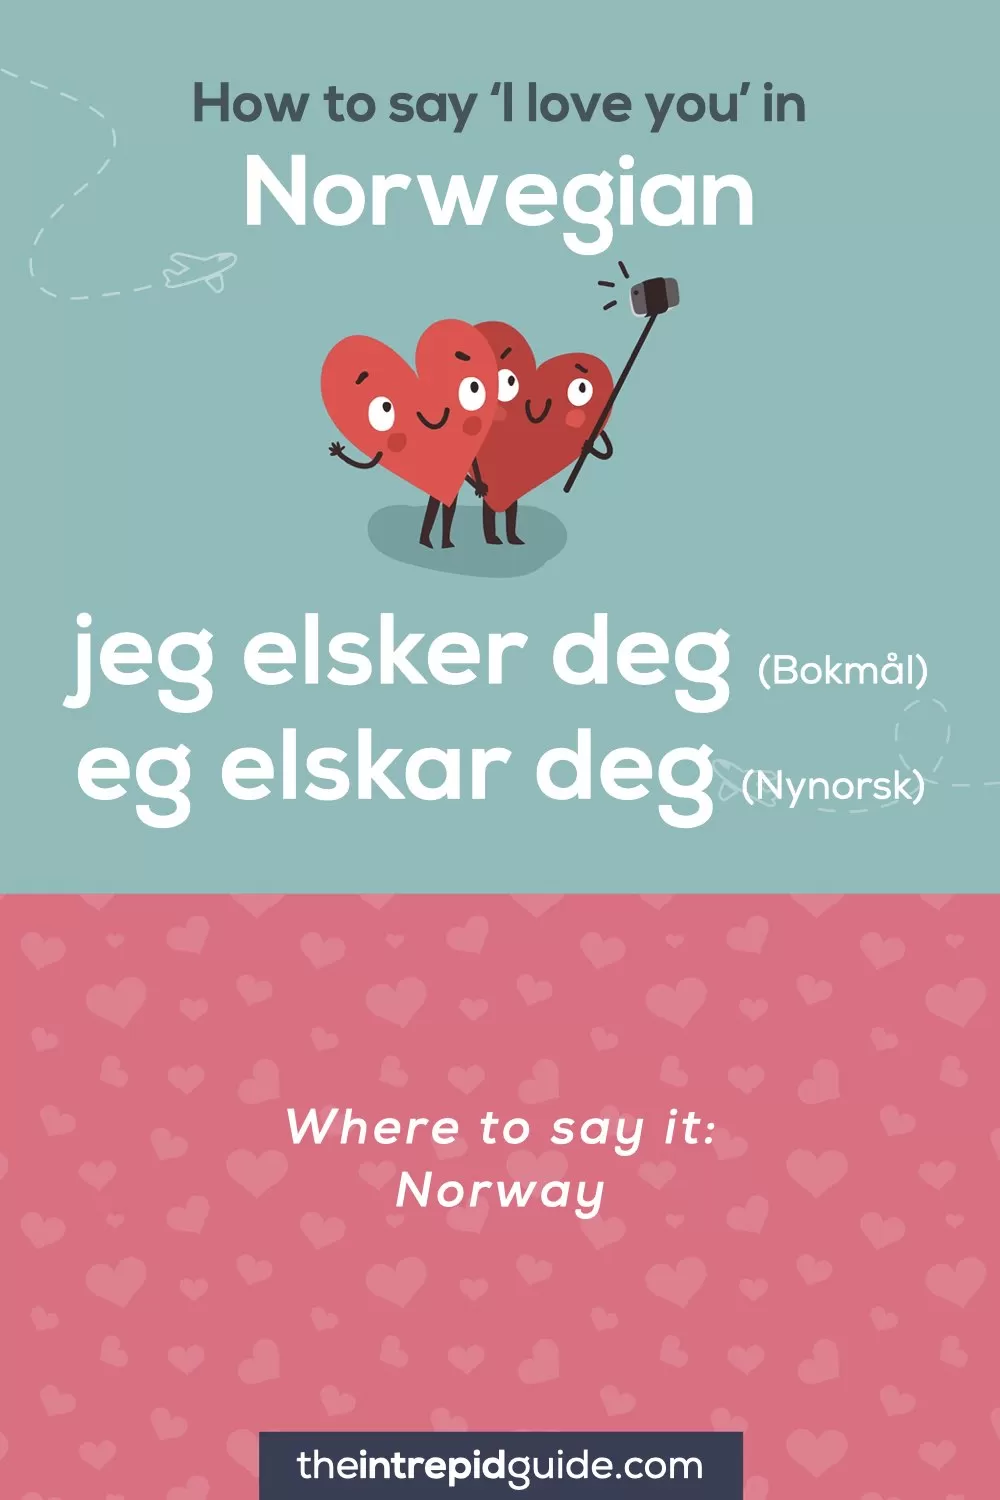 How to say I love you in different languages - Norwegian - jeg elsker deg - Bokmal - eg elskar deg - Nynorsk